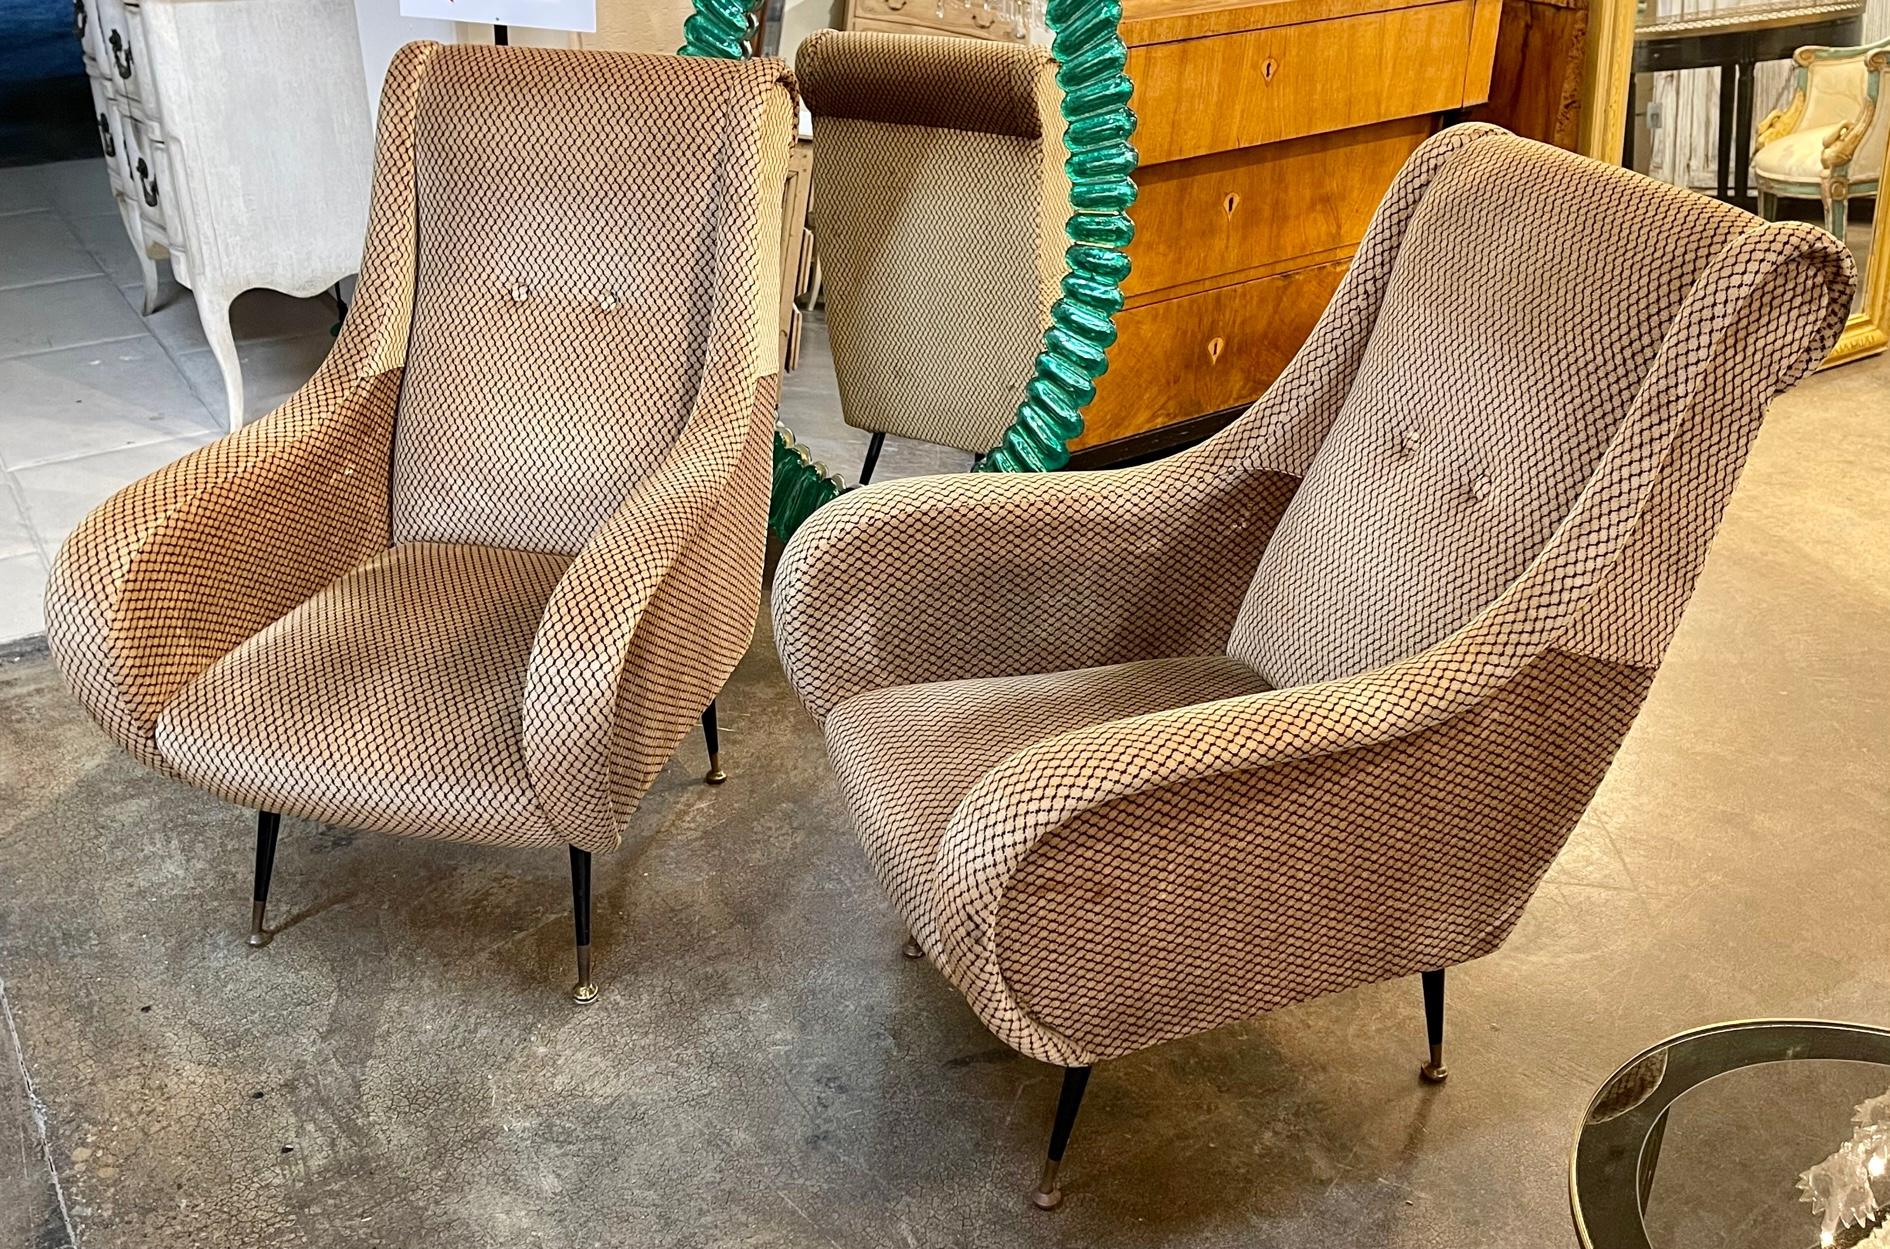 Paire de fauteuils italiens MCM dans le style de Marco Zanuso. Circa 1940. Parfait pour les designs de transition d'aujourd'hui.